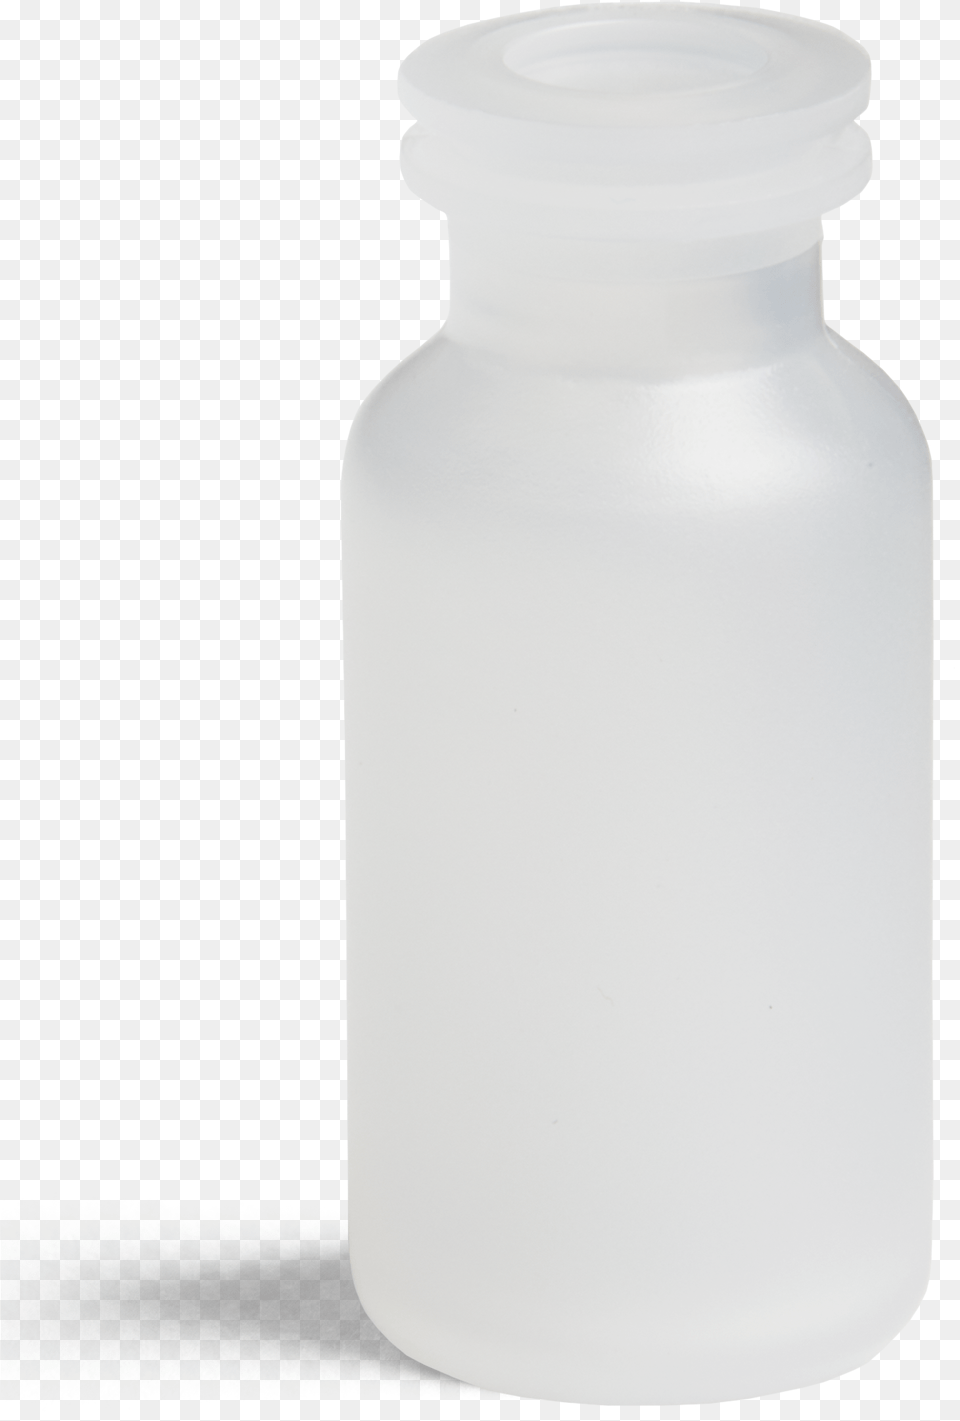 Ml Serum Vial Empty, Jar, Cylinder, Bottle, Beverage Free Png Download